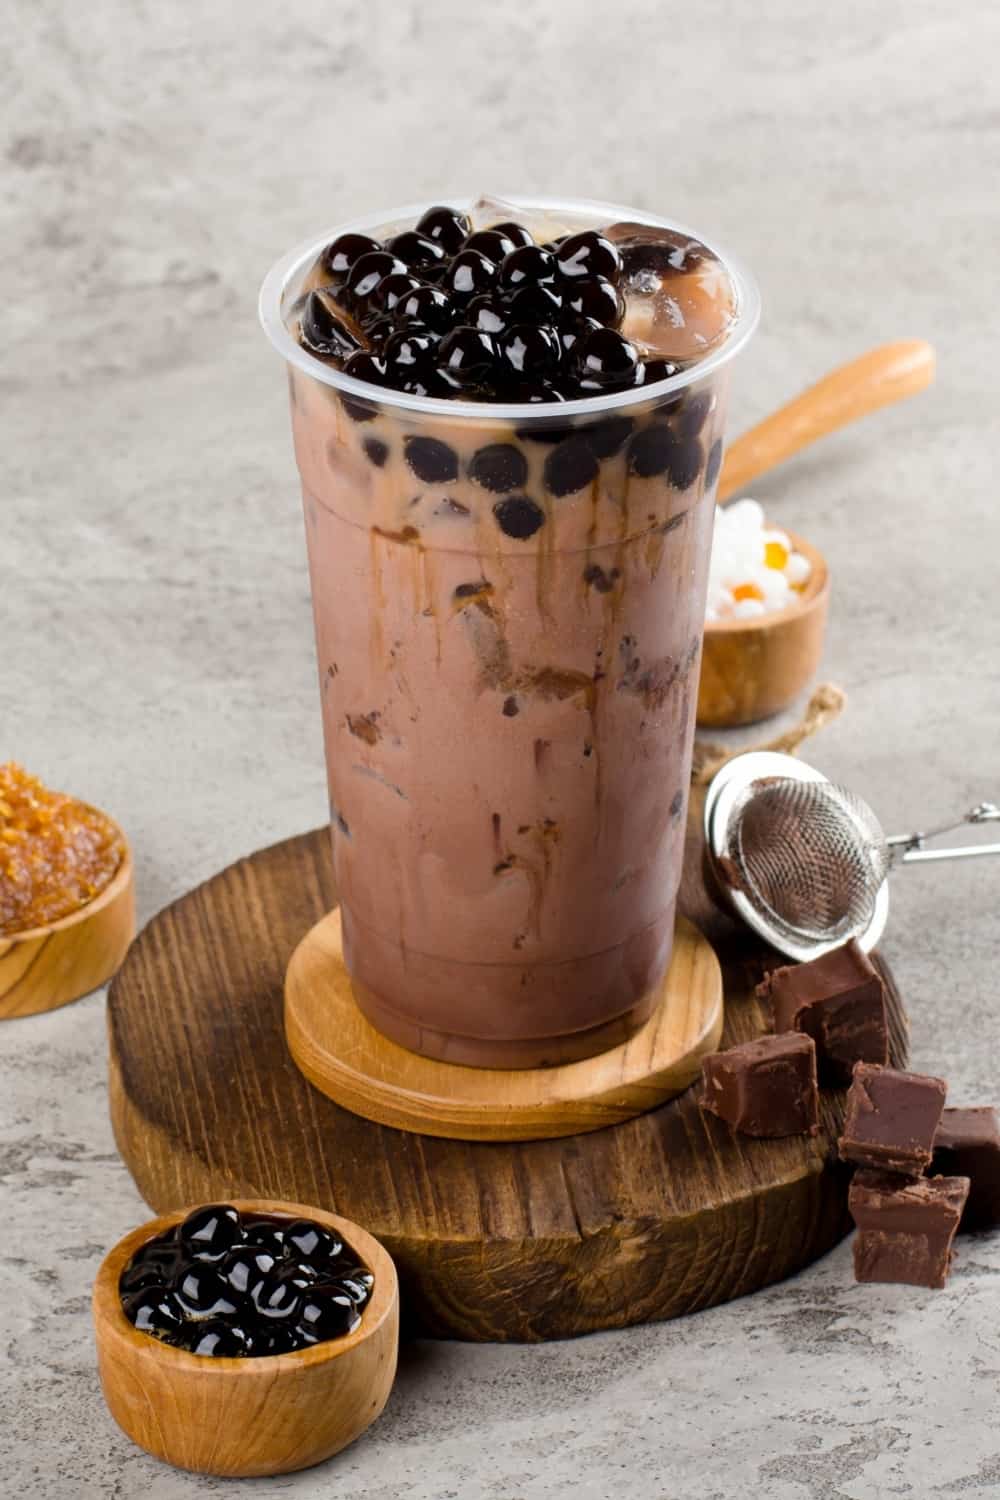 Boba o perlas de tapioca es taiwan bubble milk tea en vaso de plástico con sabor a chocolate